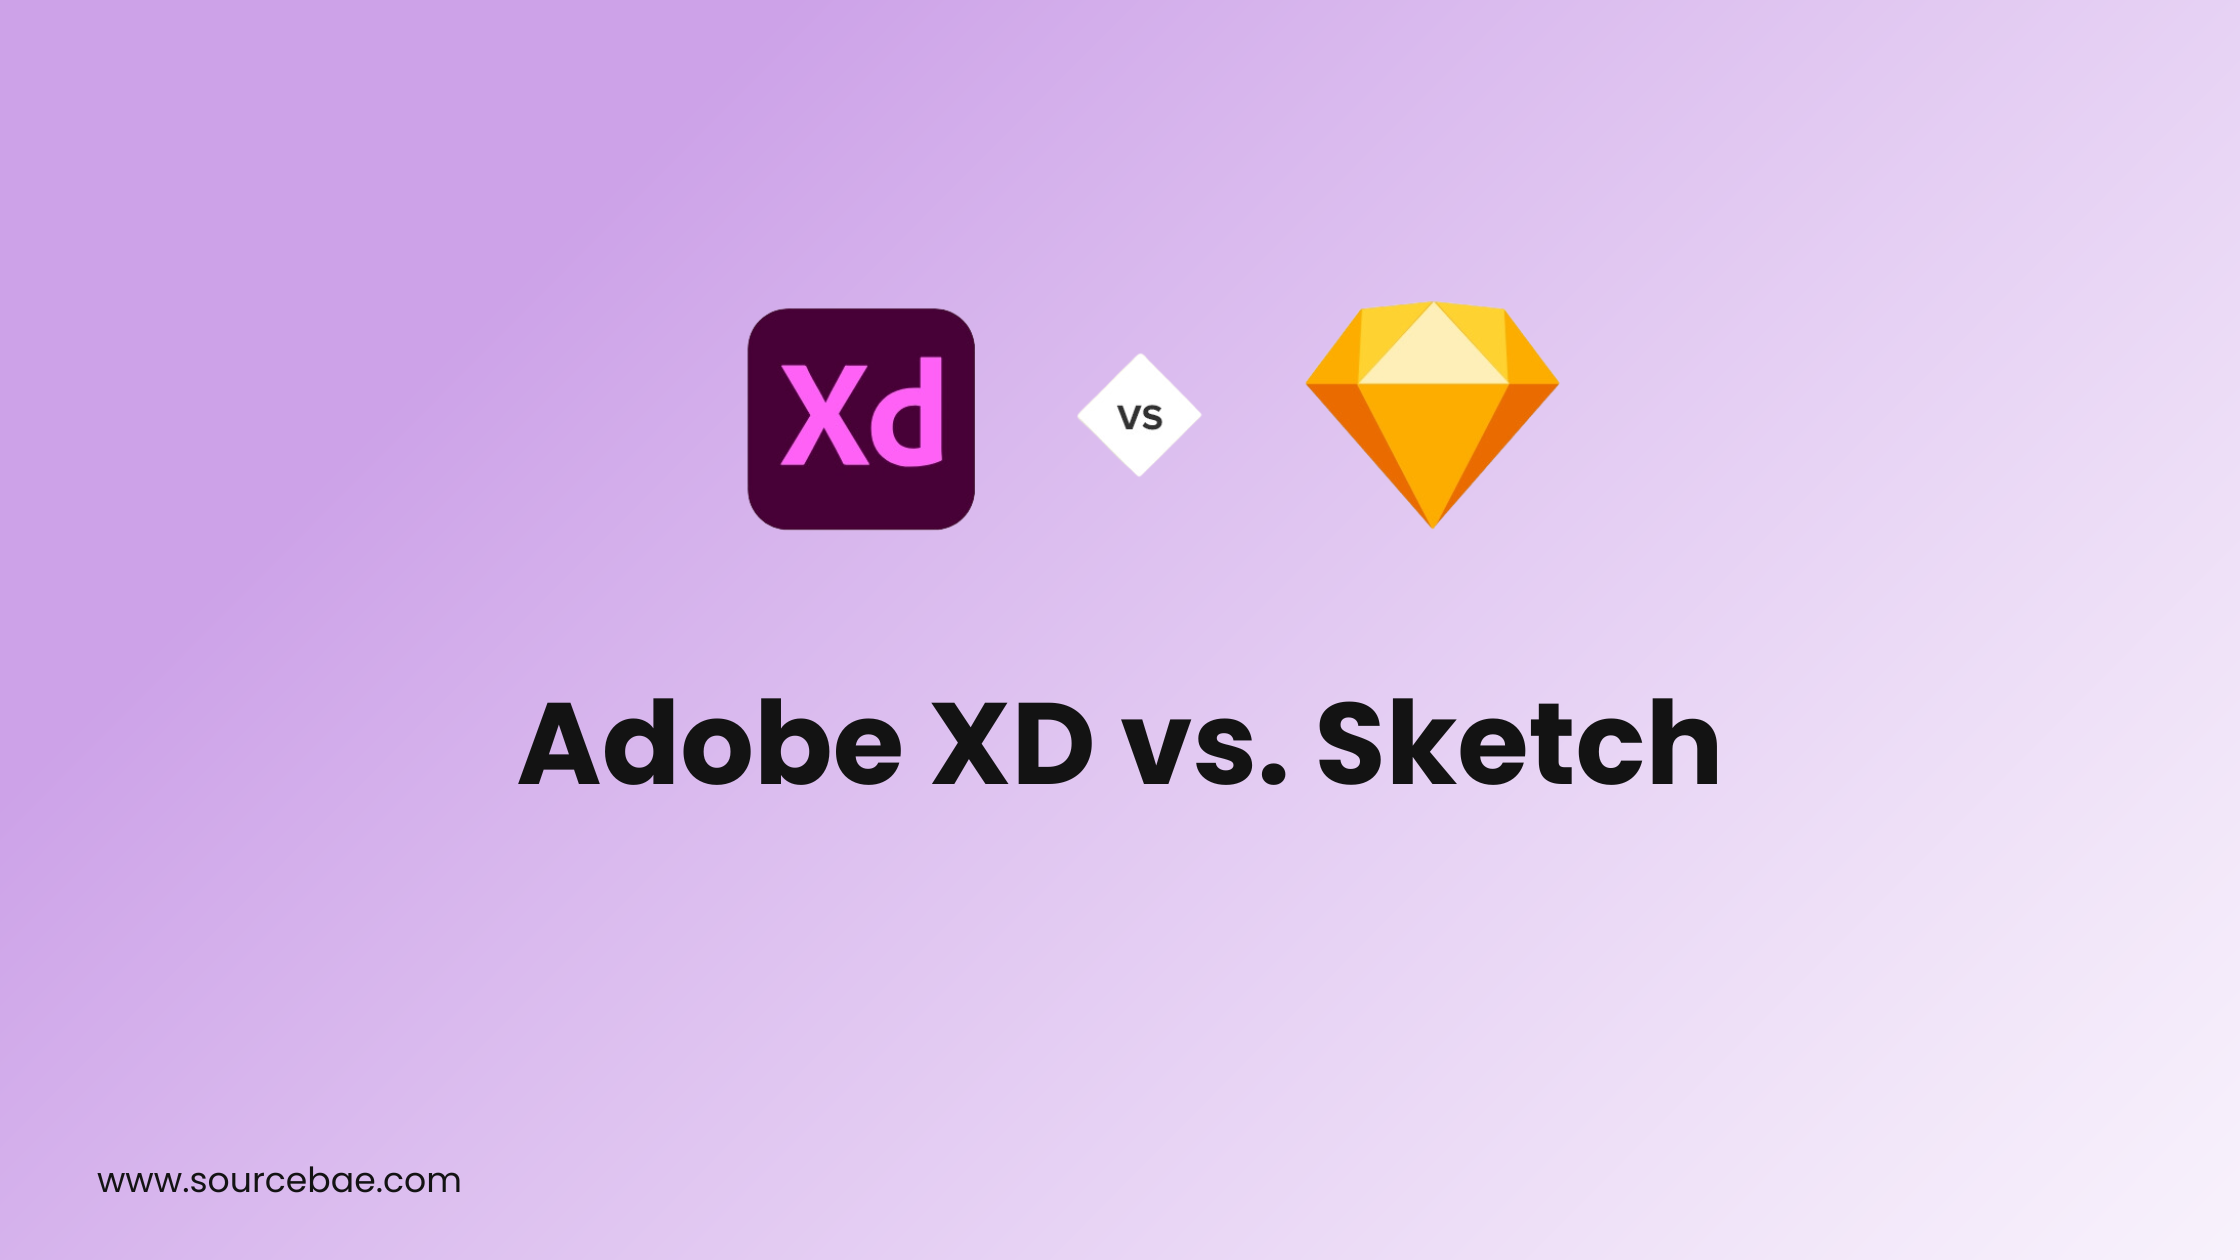 Adobe XD vs. Sketch